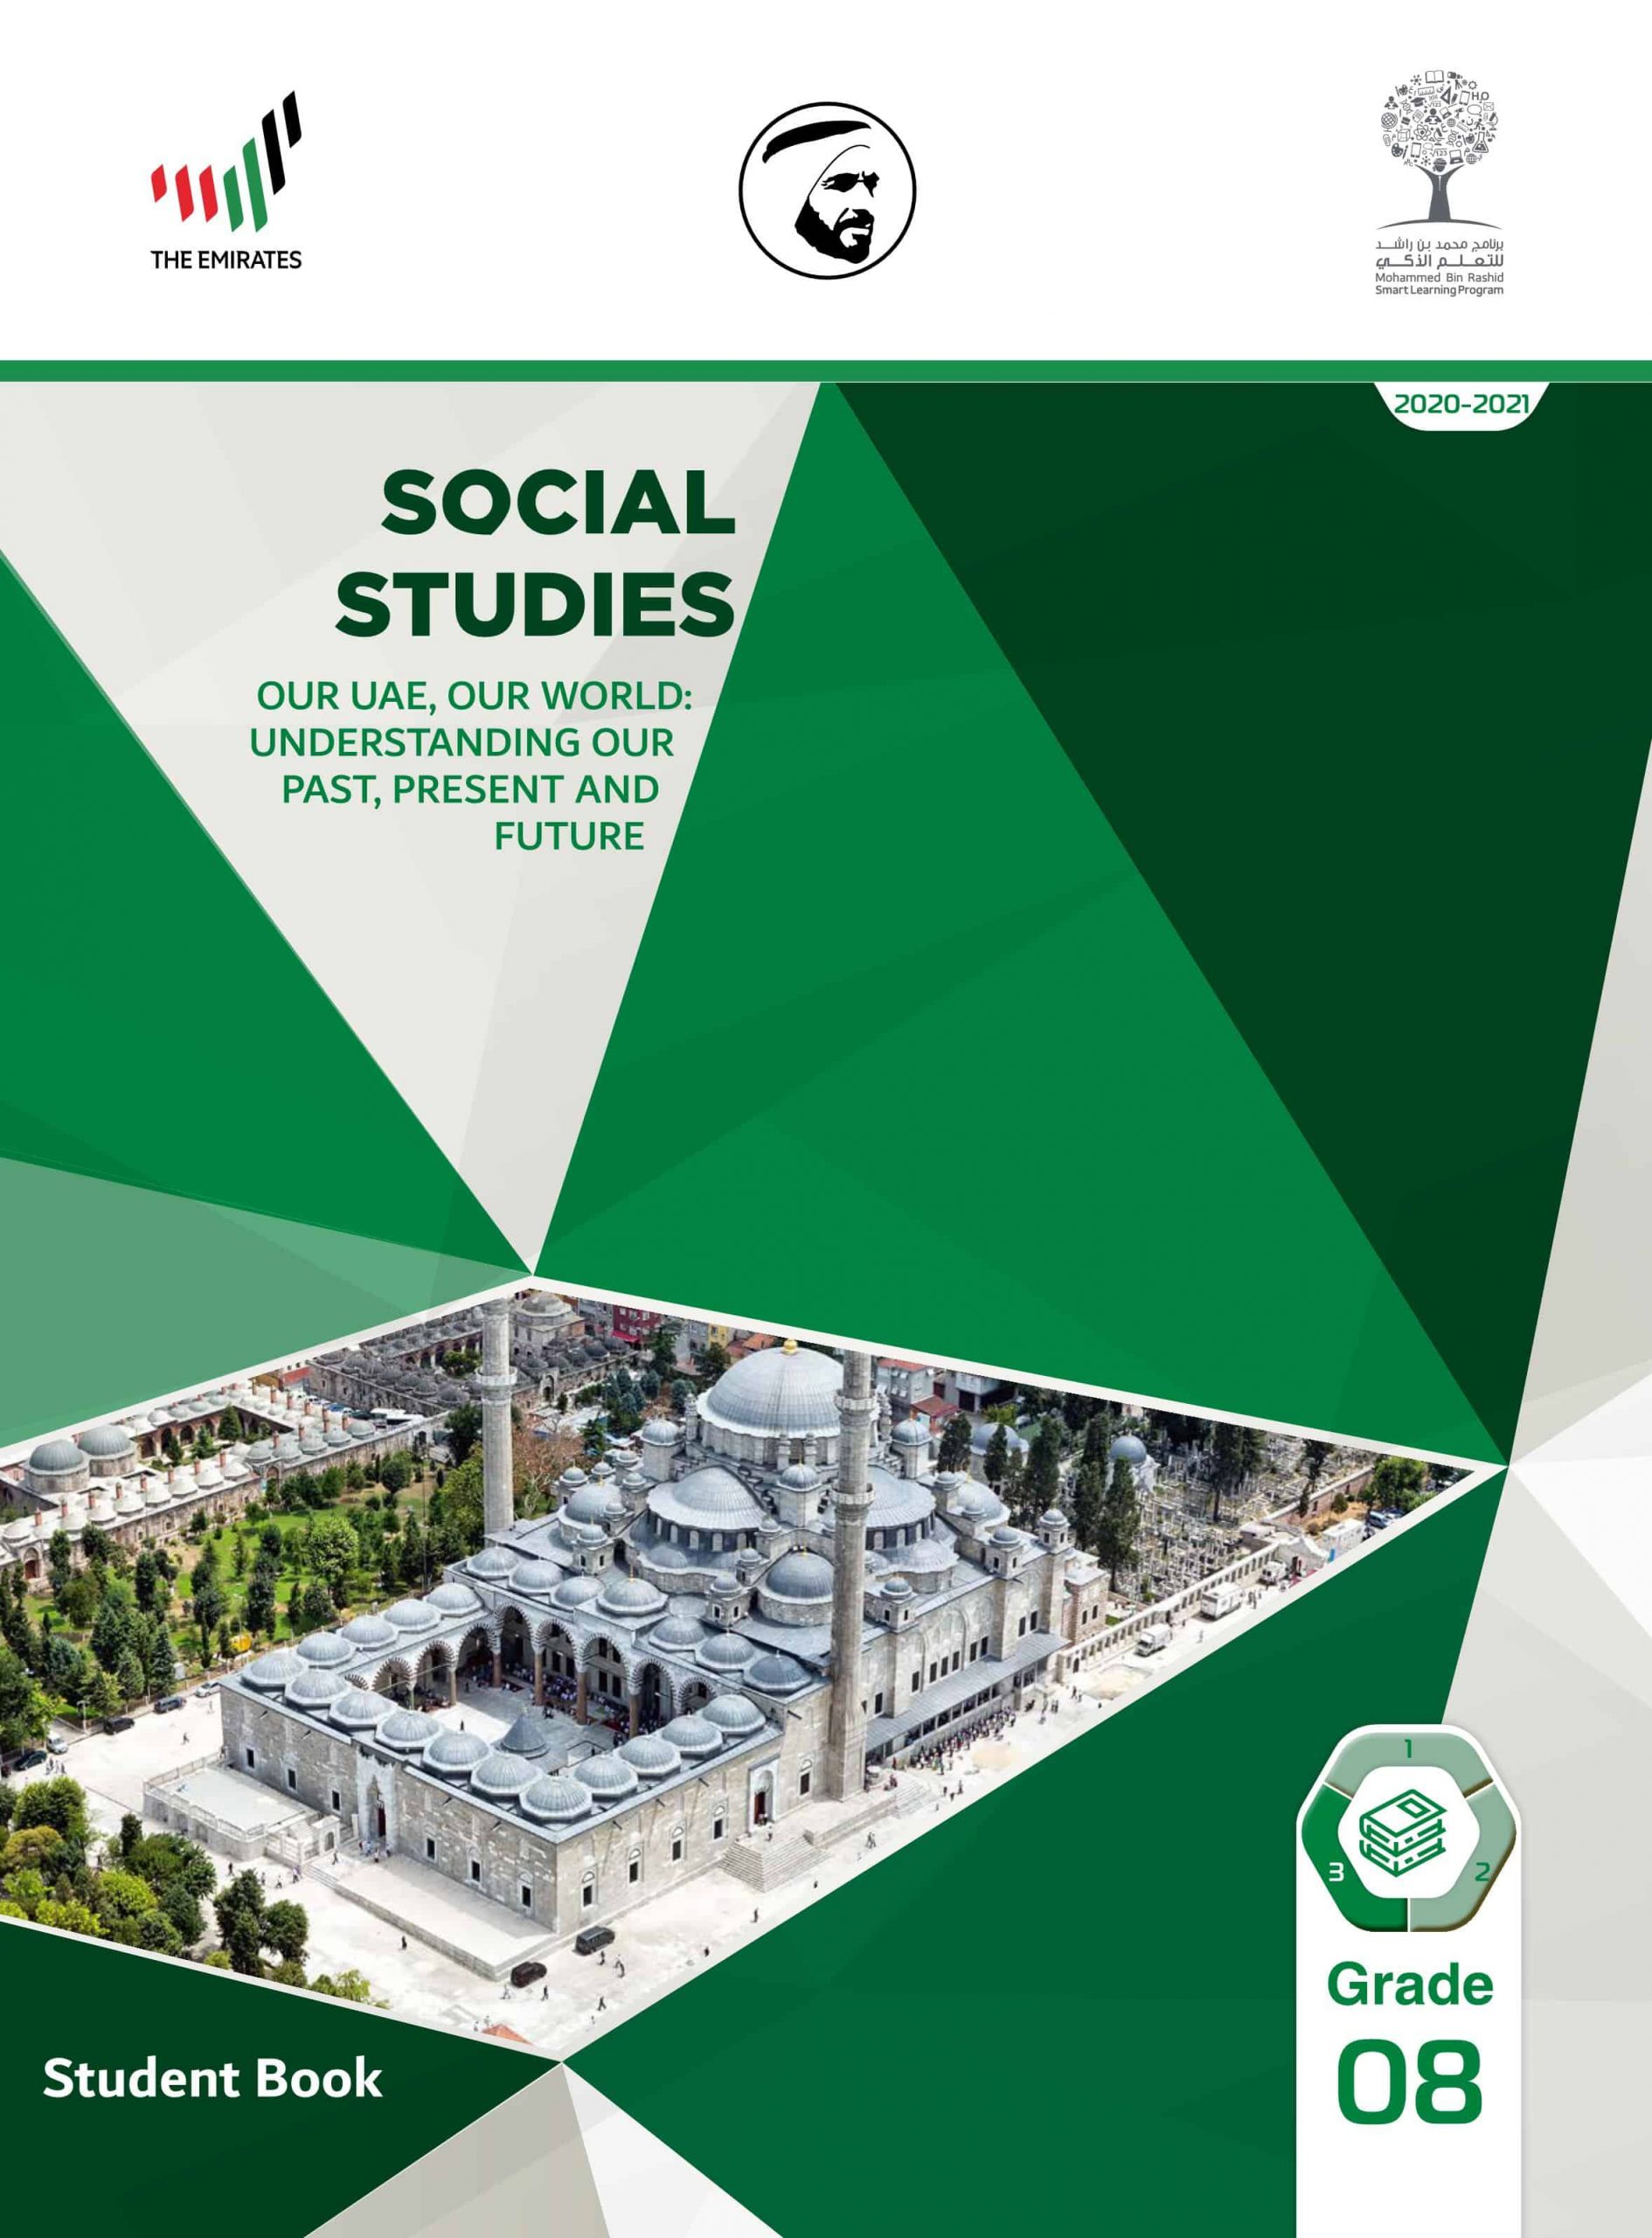 كتاب الطالب بالإنجليزي الفصل الدراسي الثالث 2020-2021 الصف الثامن مادة الدراسات الإجتماعية والتربية الوطنية